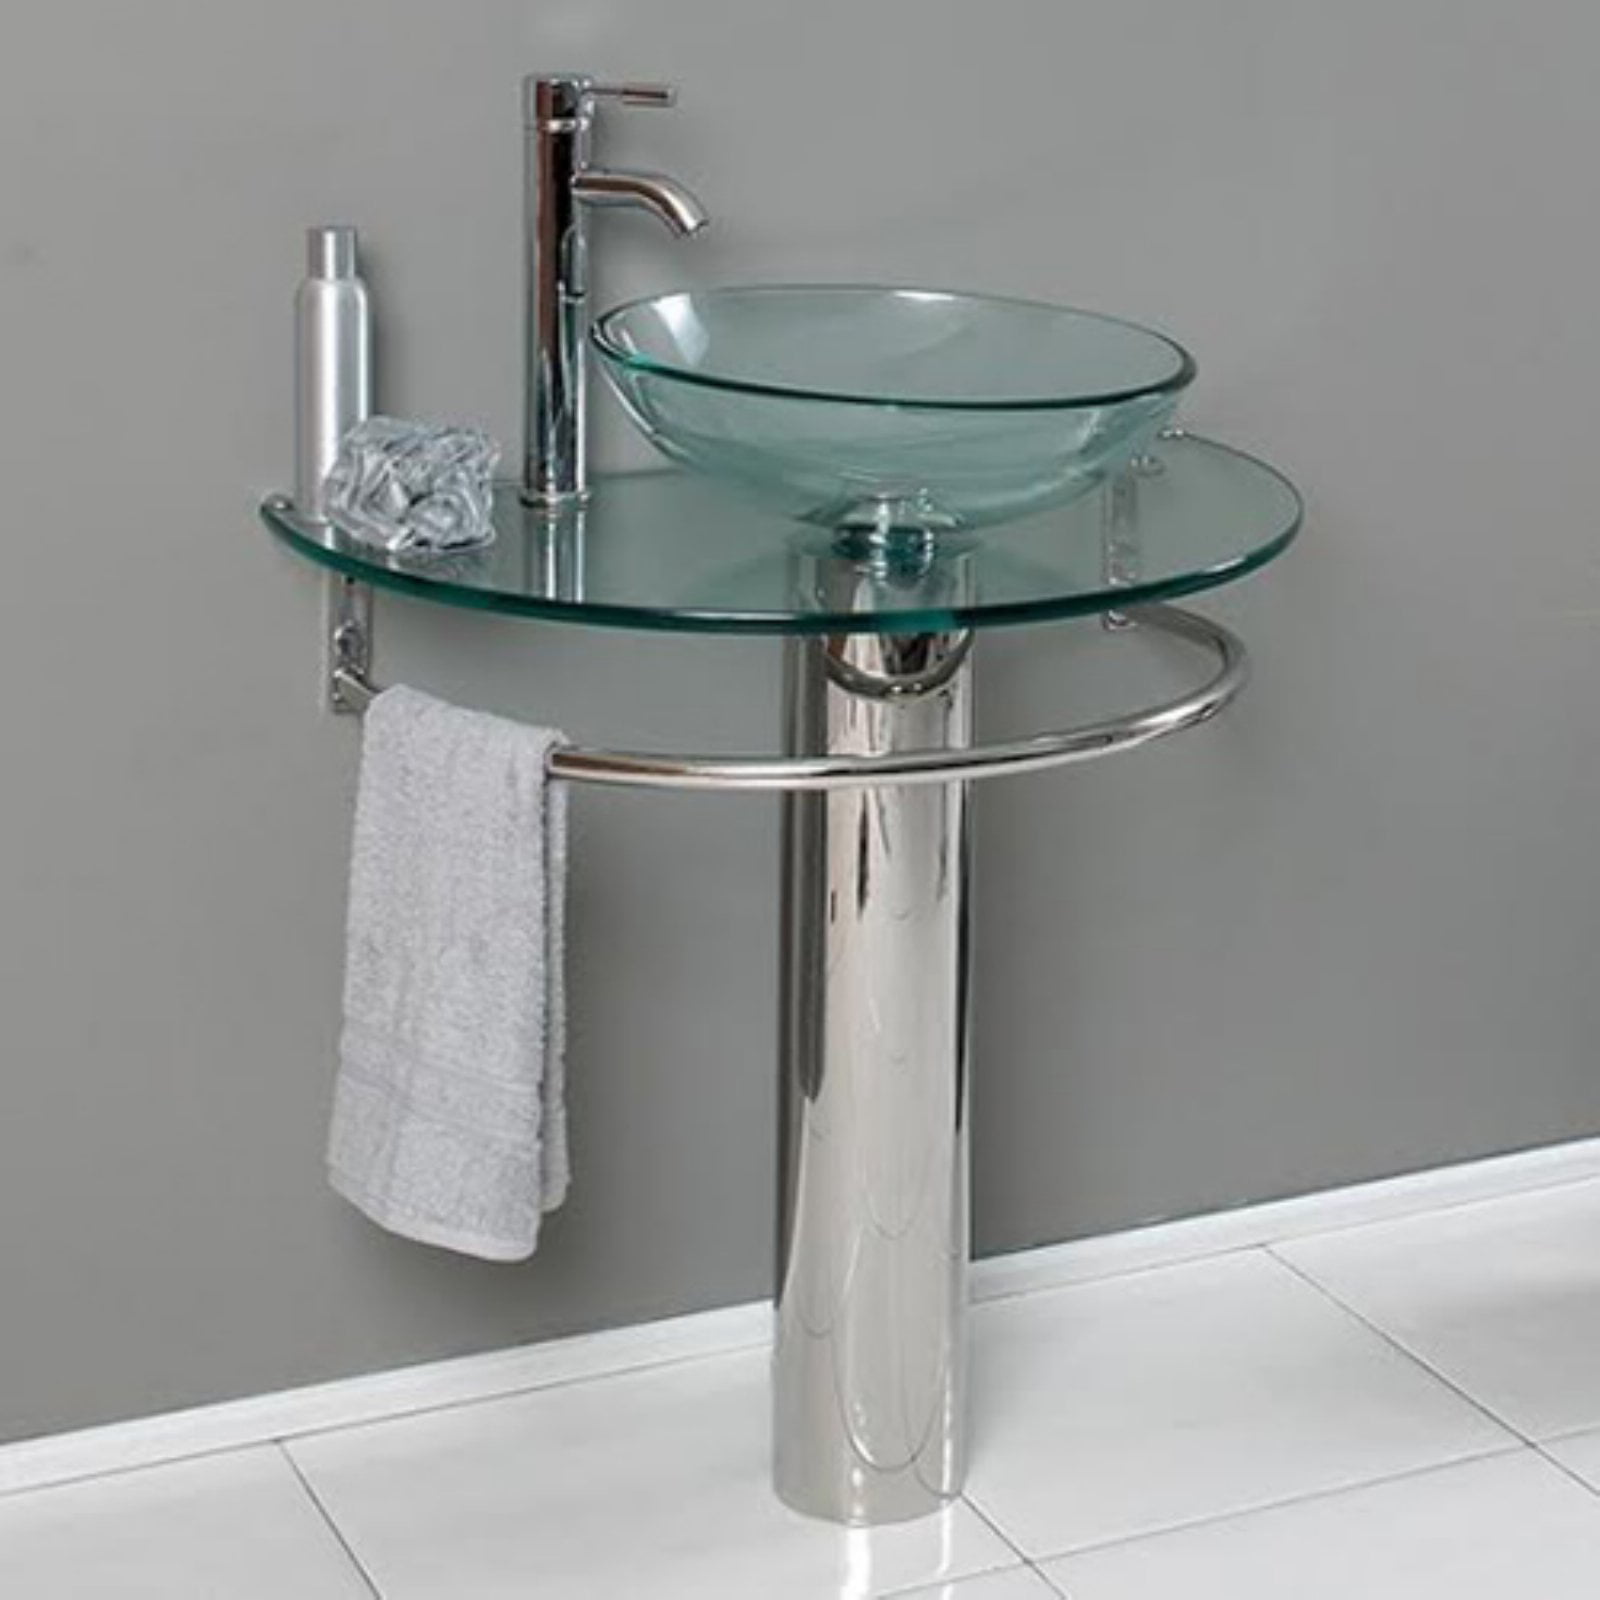 Belvedere 295 In Modern Single Bathroom Vanity With Glass Sink Walmartcom Walmartcom